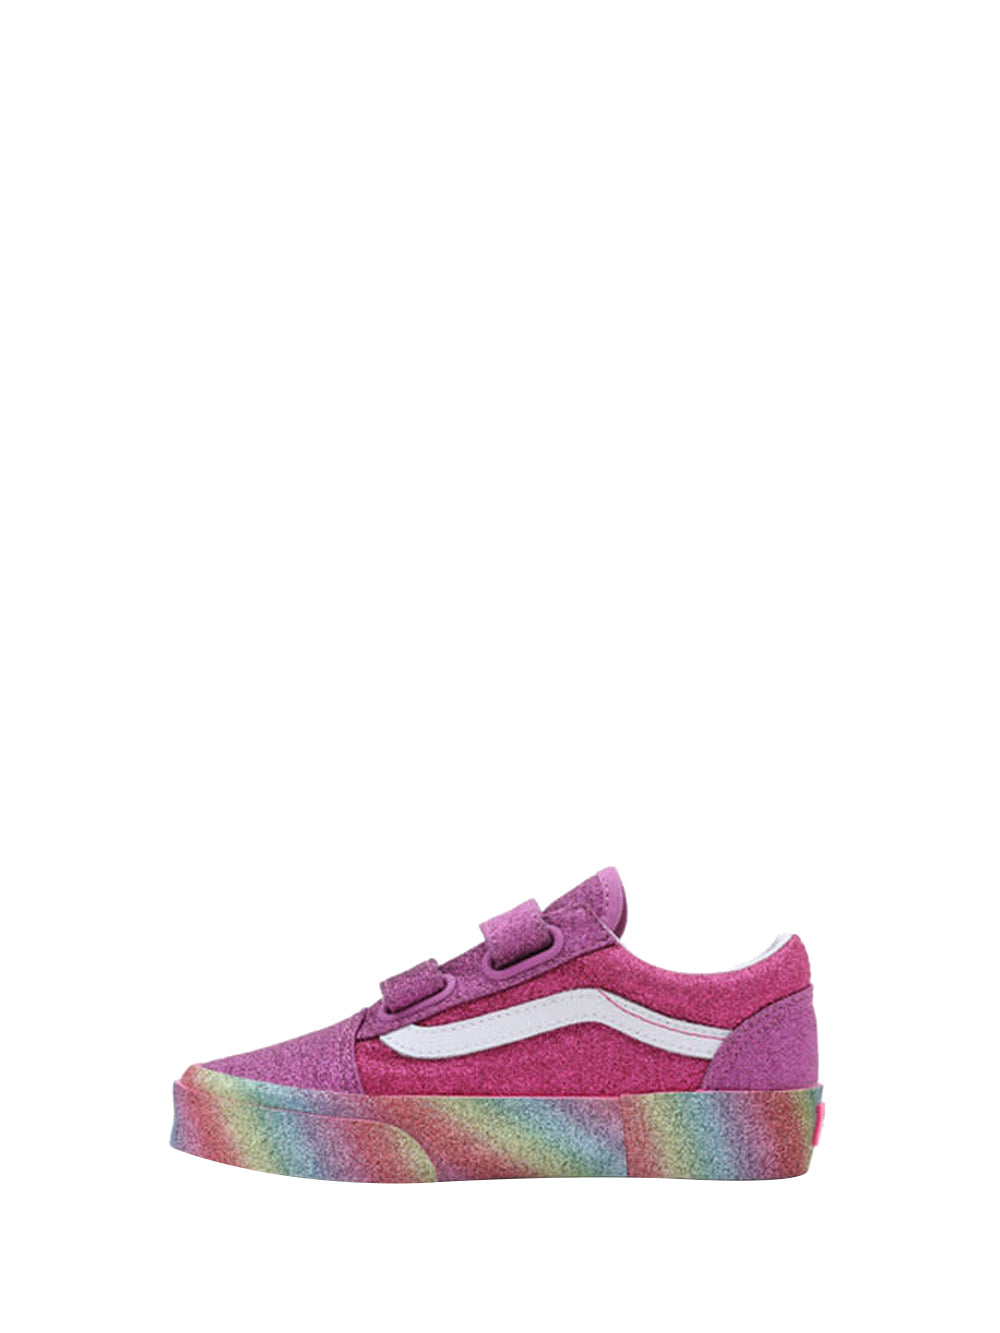 VANS Sneakers Bambina Rosa/multicolor con tomaia glitterata Rosa/multicolor